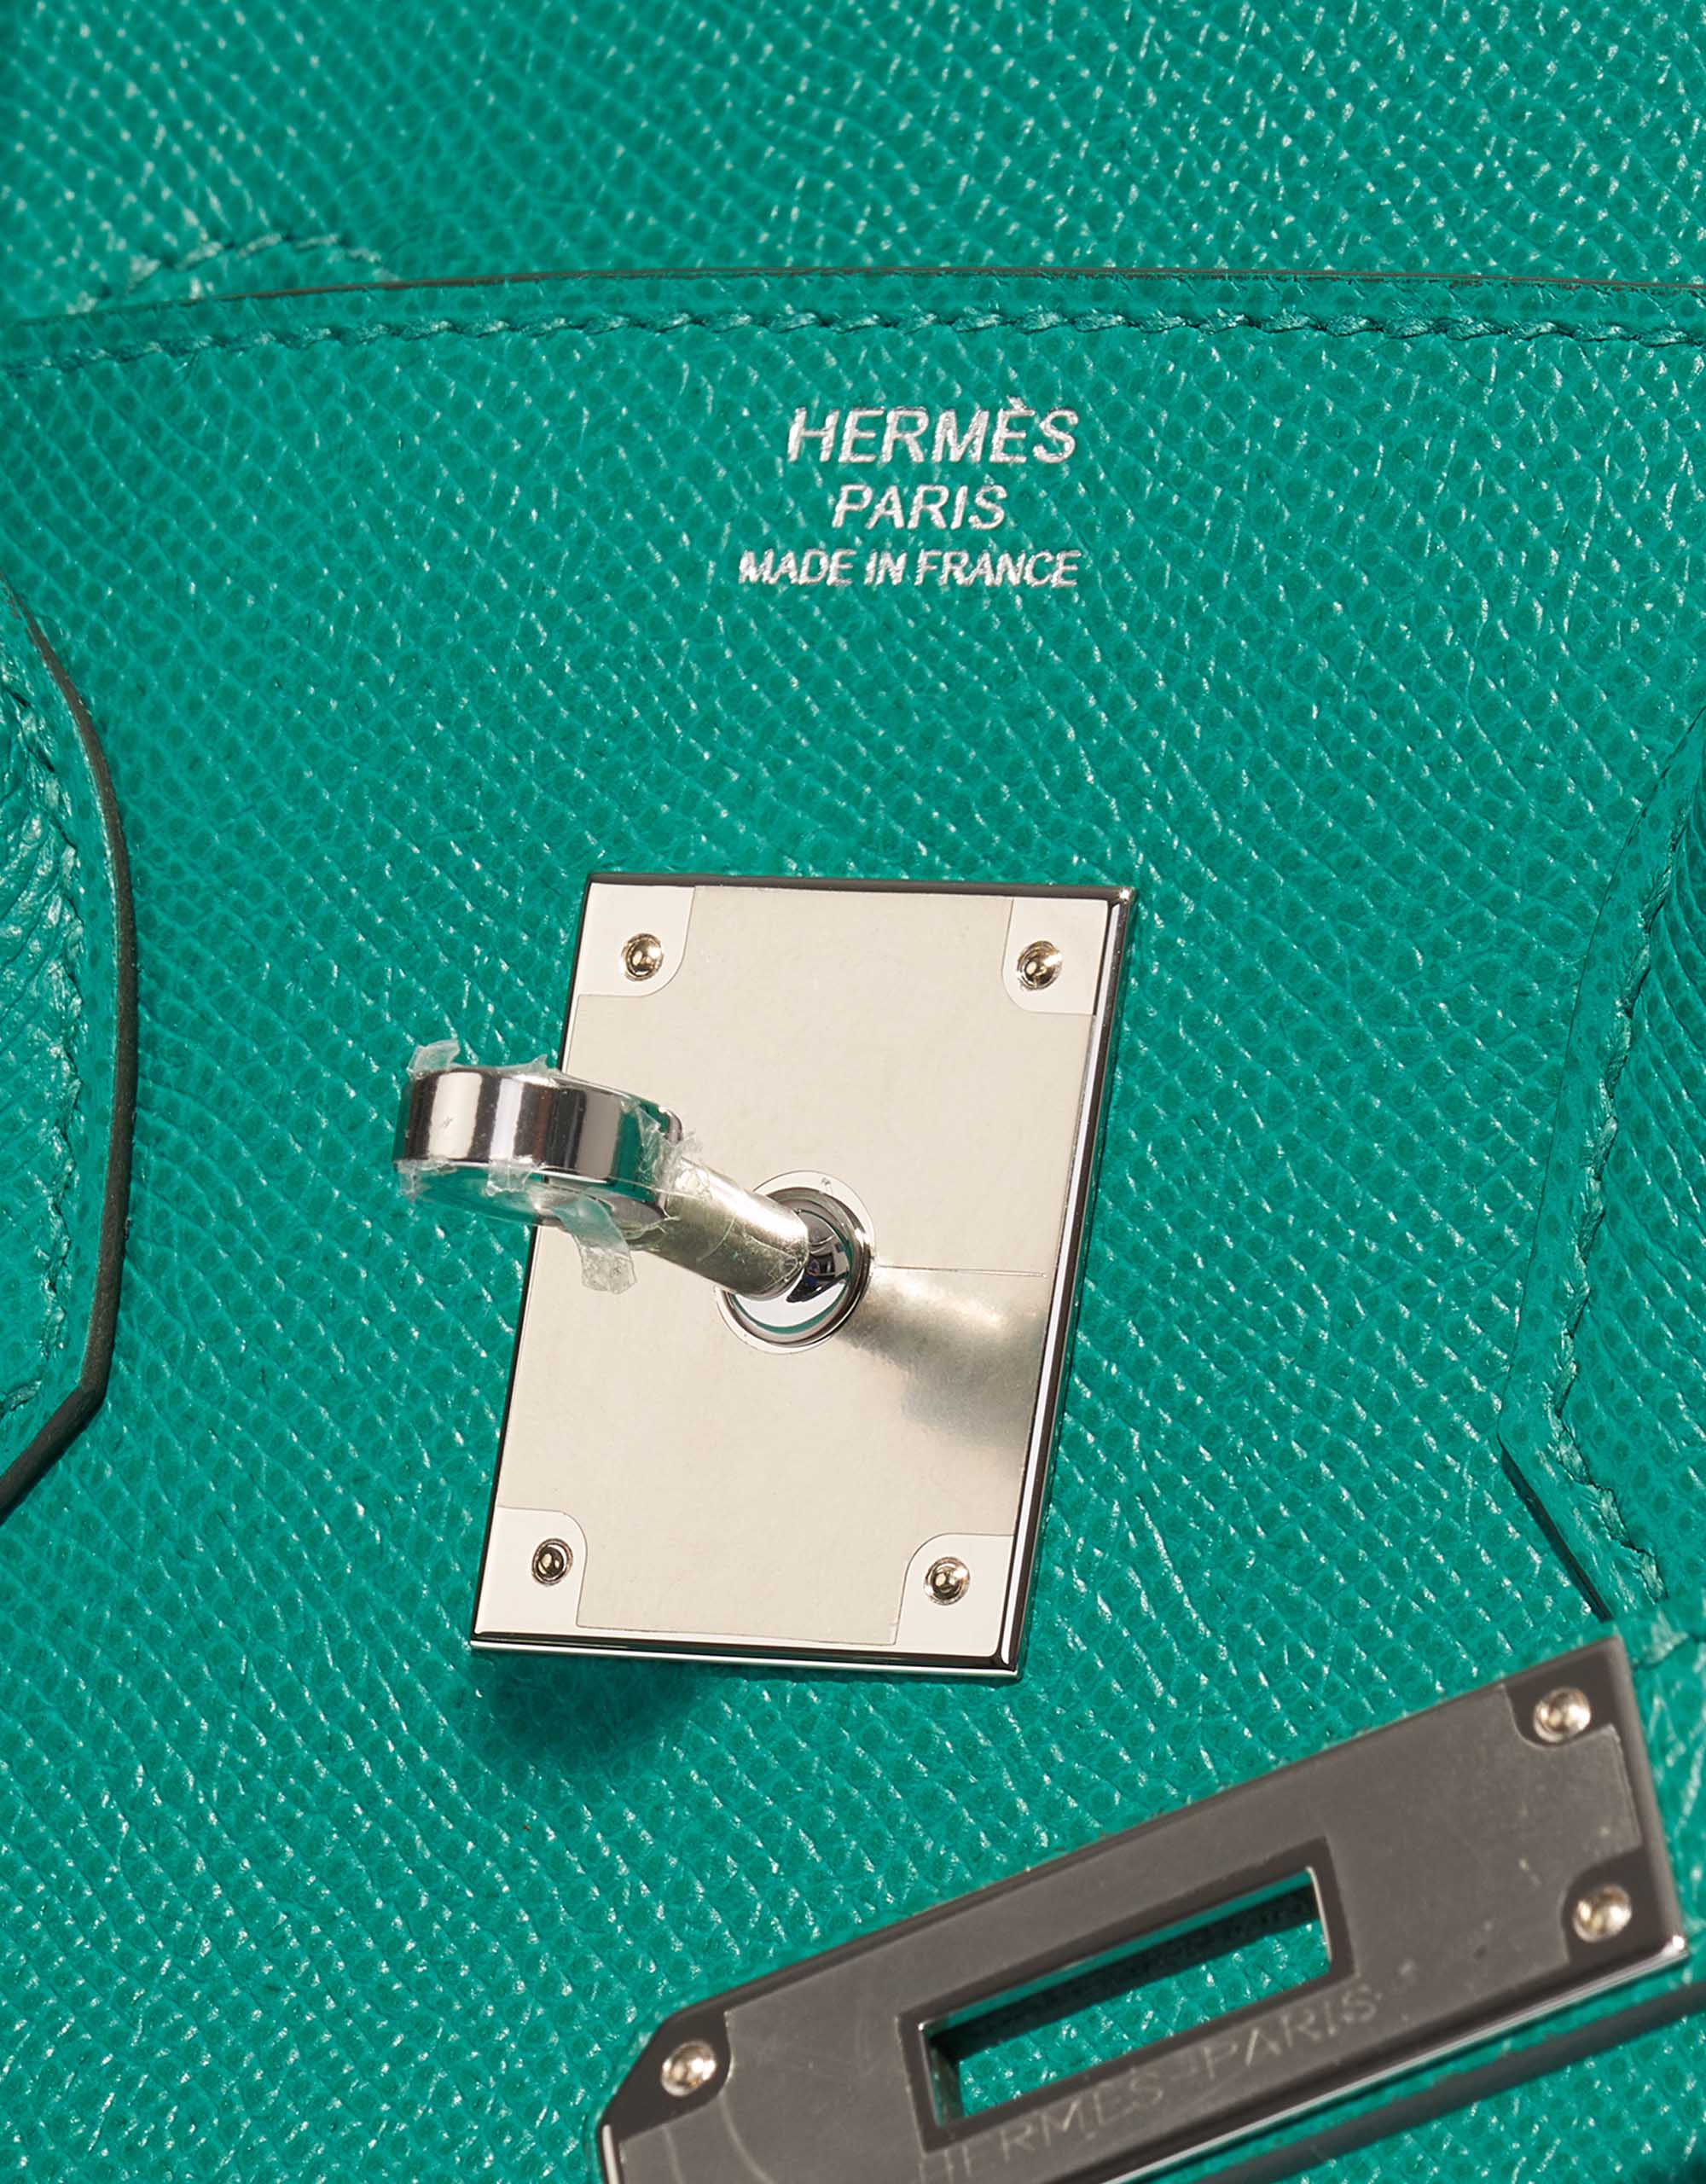 Pre-owned Hermès Tasche Birkin 30 Epsom Vert Jade Green Logo | Verkaufen Sie Ihre Designer-Tasche auf Saclab.com